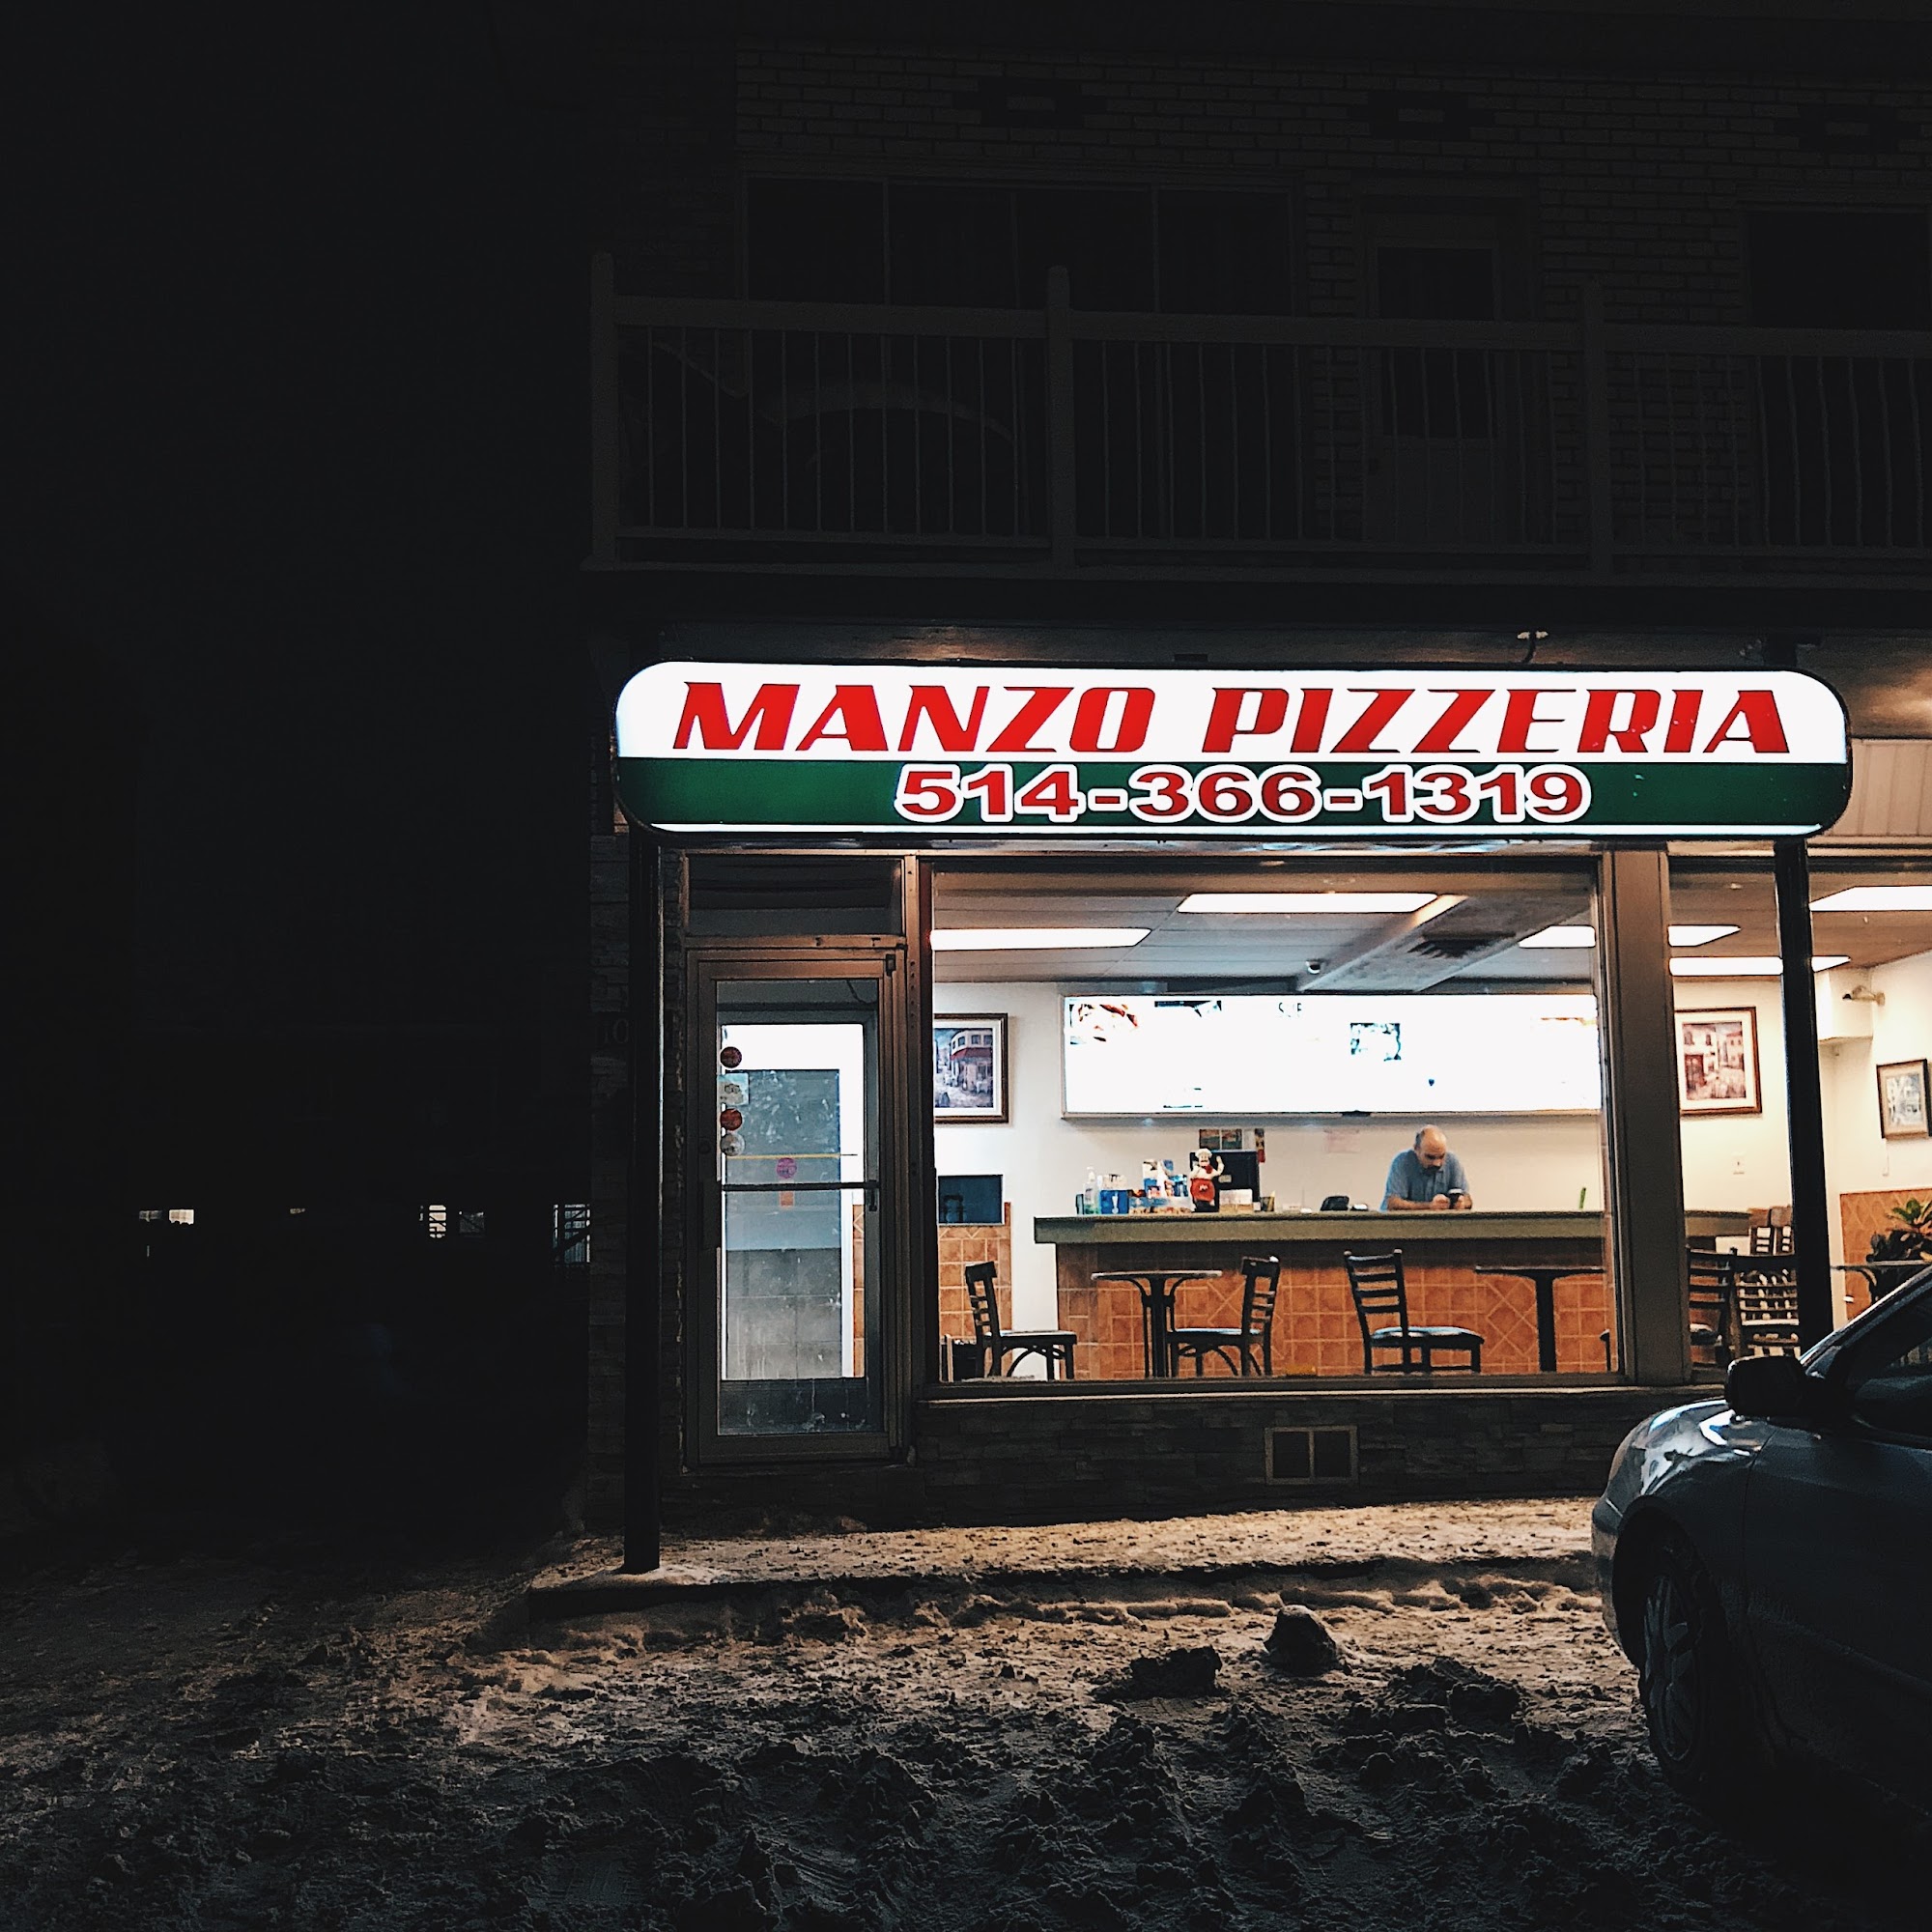 Manzo Pizzeria